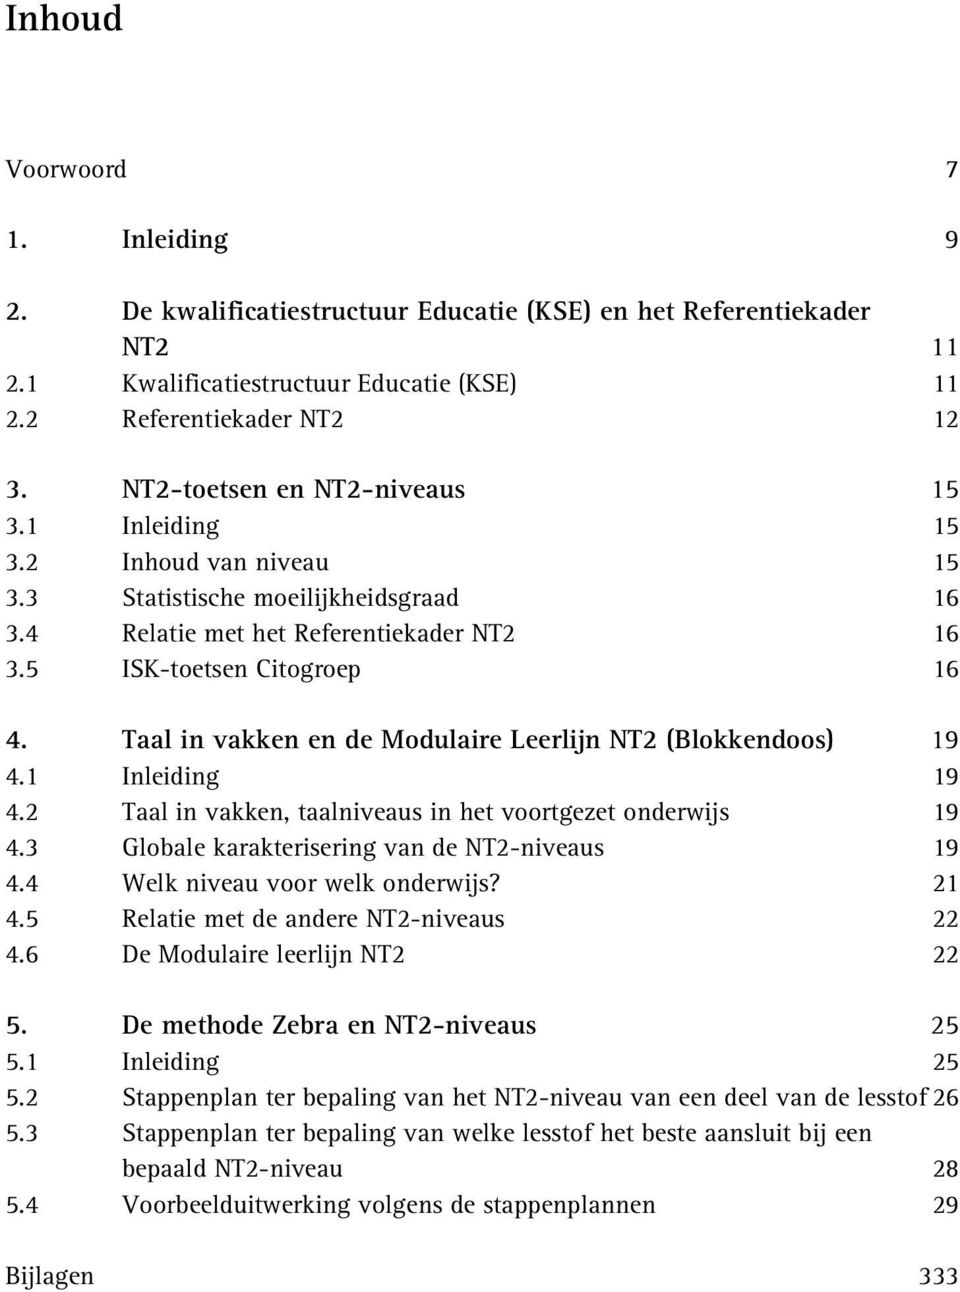 Taal in vakken en de Modulaire Leerlijn NT2 (Blokkendoos) 19 4.1 Inleiding 19 4.2 Taal in vakken, taalniveaus in het voortgezet onderwijs 19 4.3 Globale karakterisering van de NT2-niveaus 19 4.